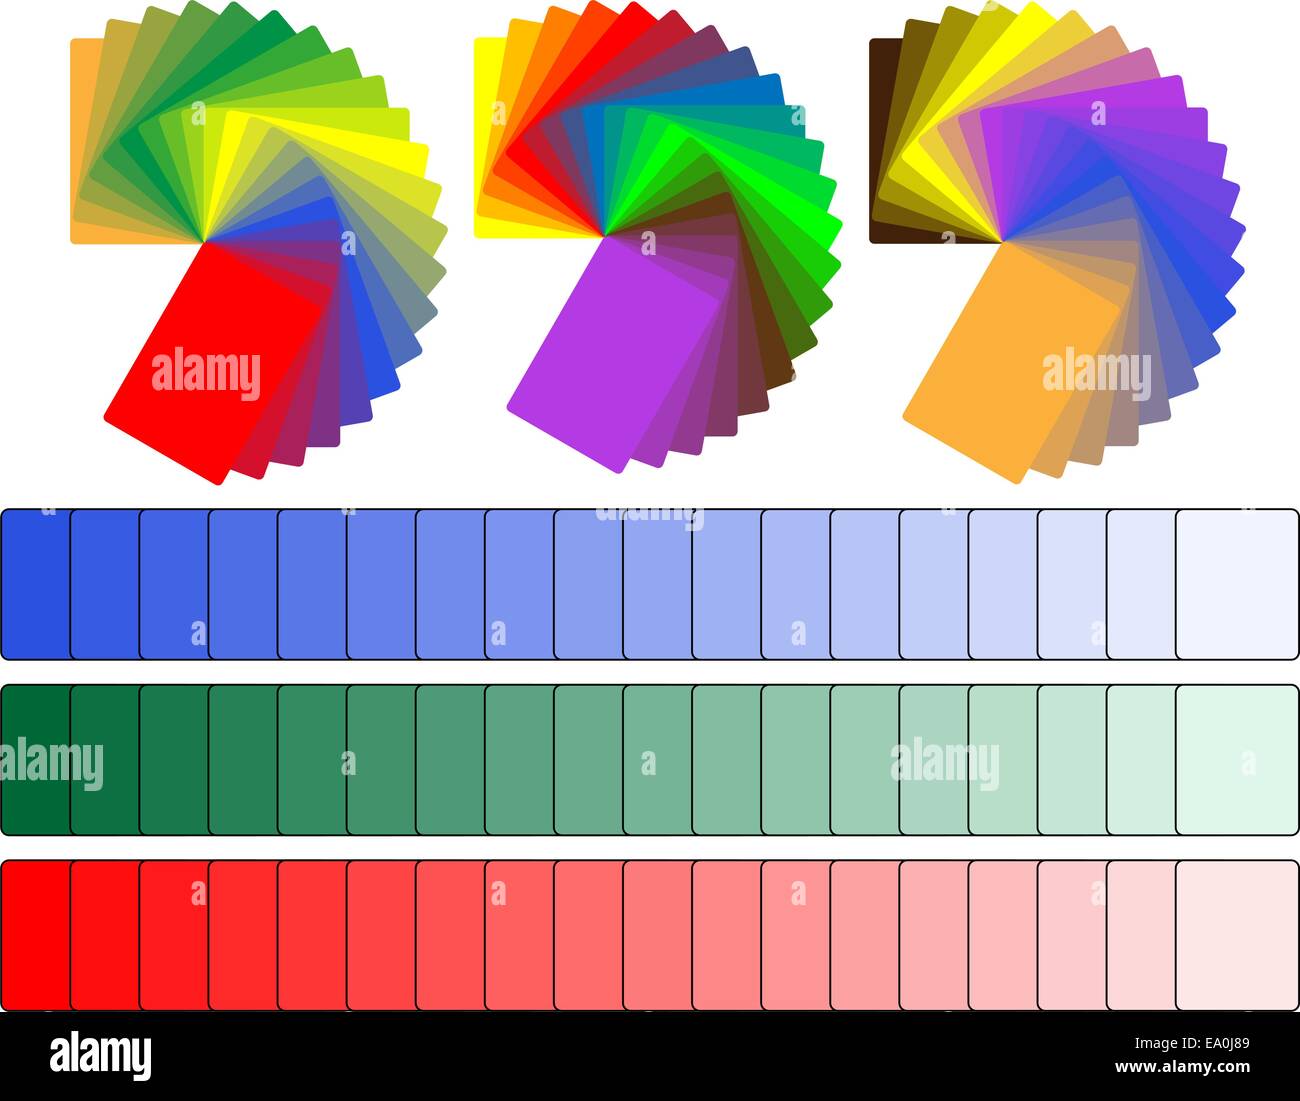 Vektor-Farbpaletten mit verschiedenen Farben und Schattierungen Stock Vektor